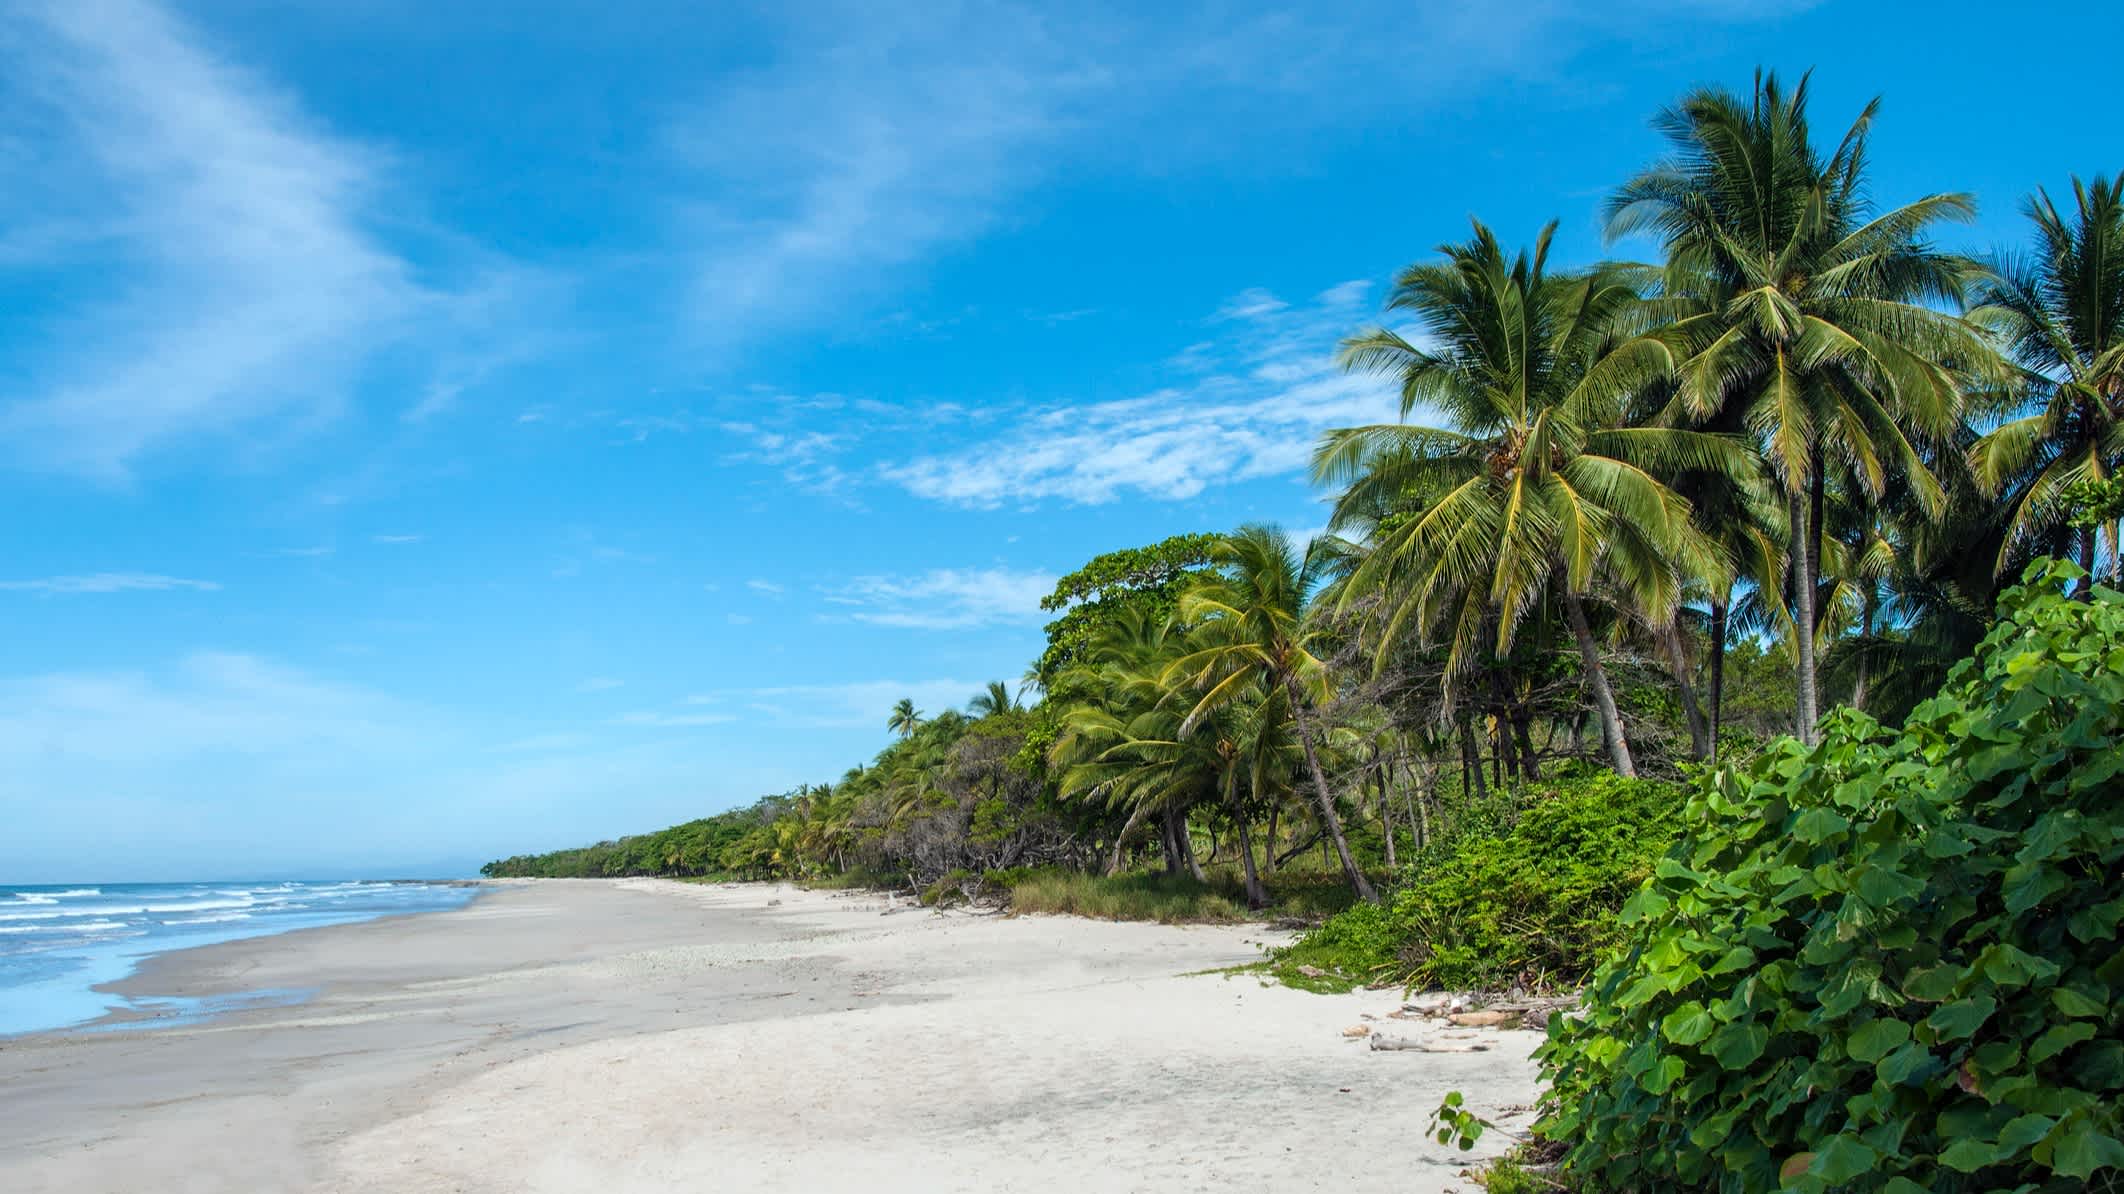 Belle plage de sable blanc Malpais sur la côte Pacifique de la péninsule de Nicoya, Costa Rica.